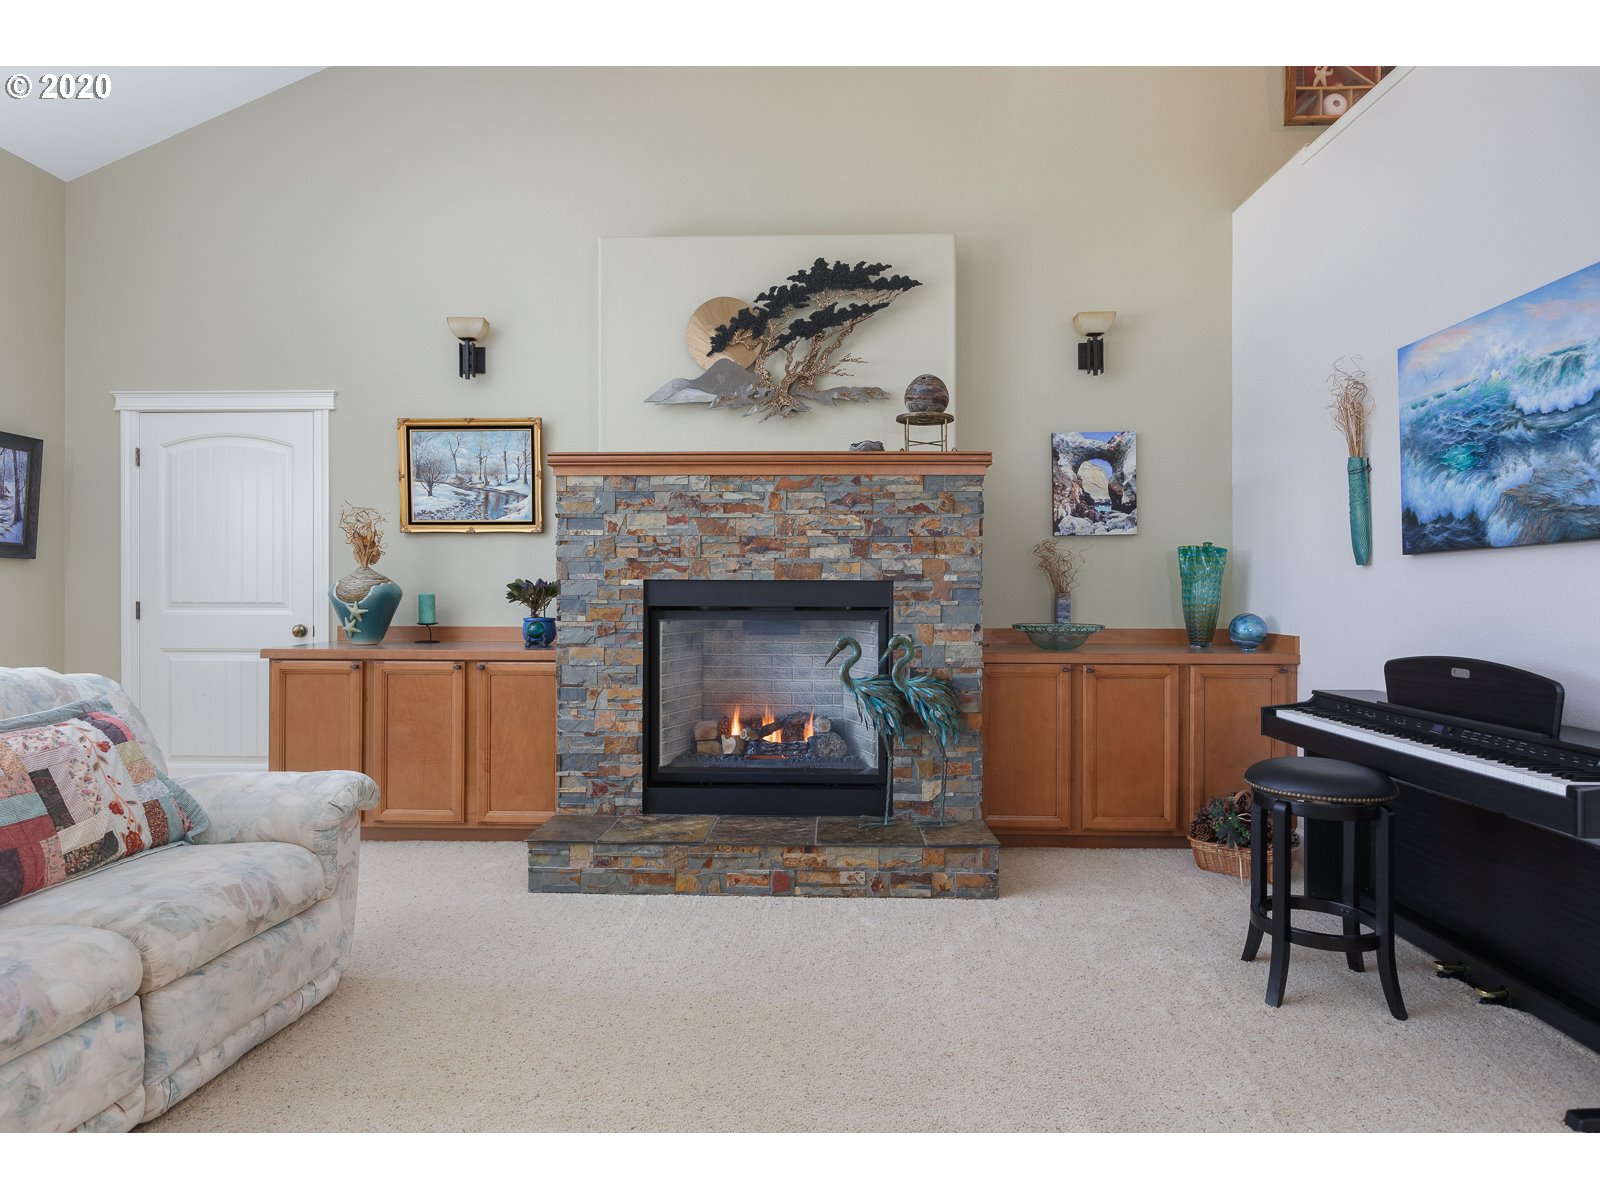 Fireplace Propane